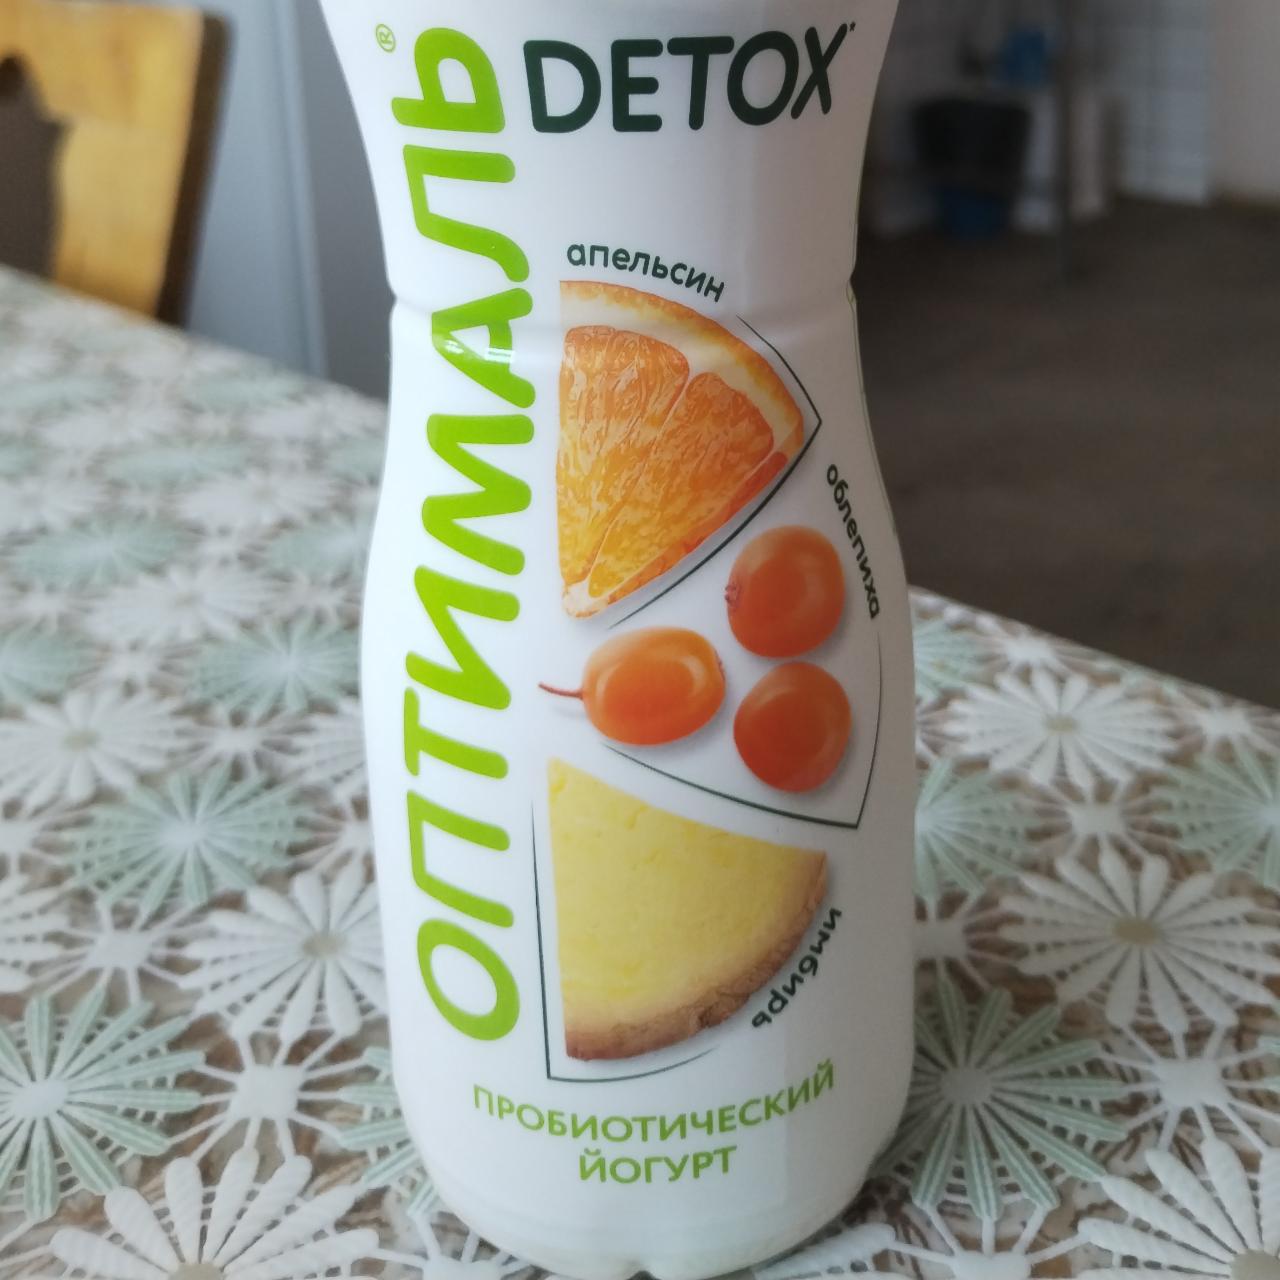 Фото - Йогурт питьевой апельсин-облепиха-имбирь Оптималь